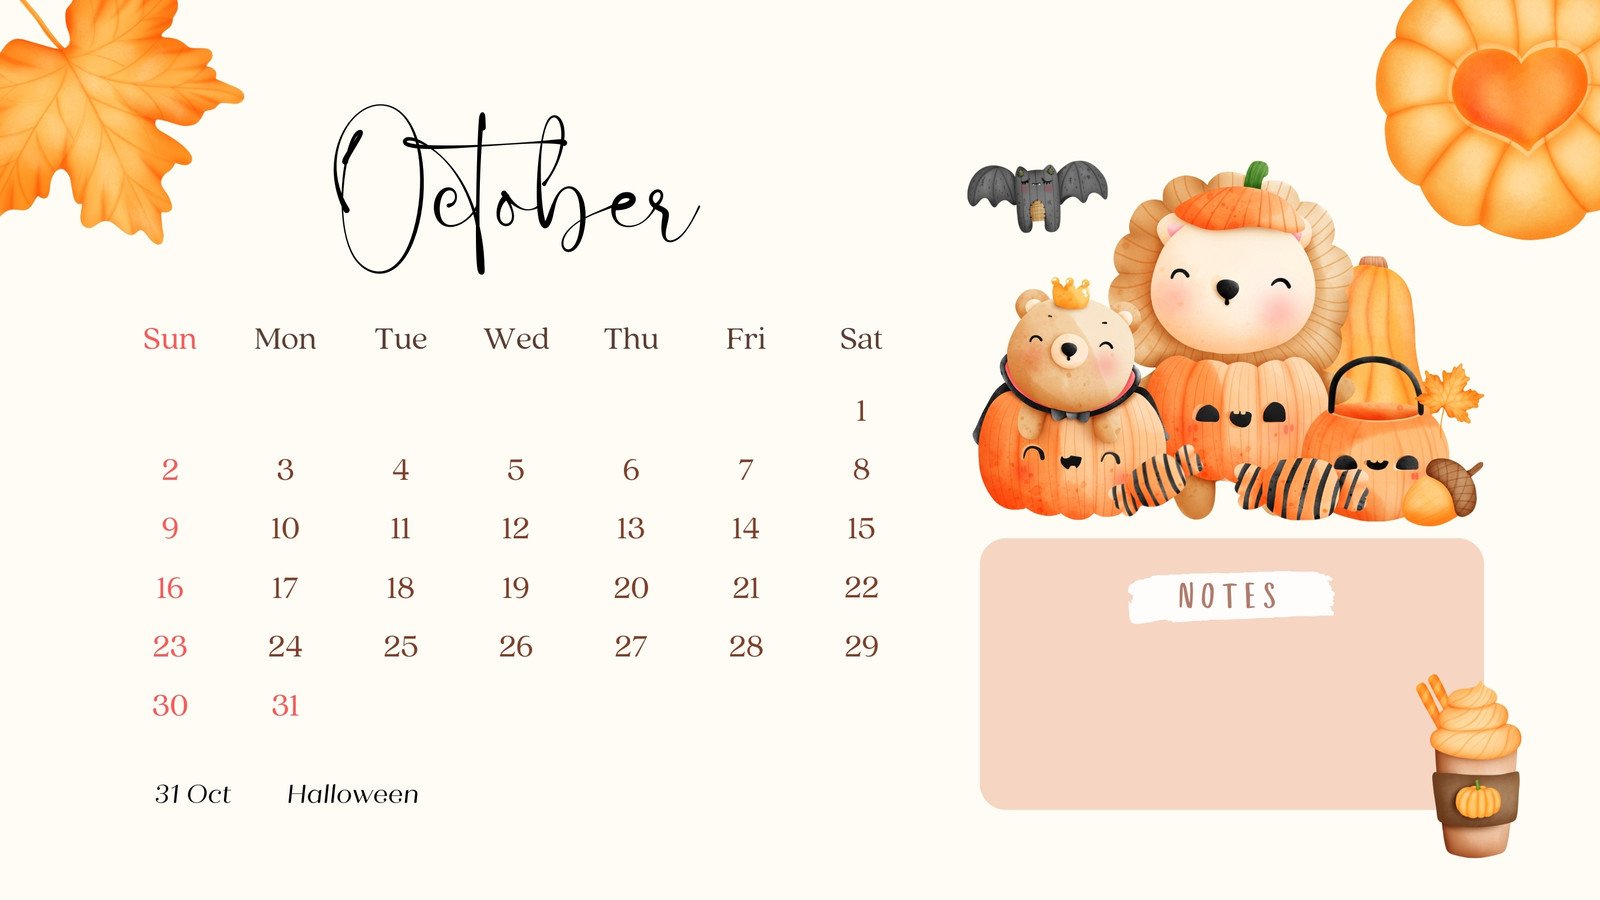 38 2020 October Desktop Calendar Wallpapers  WallpaperSafari